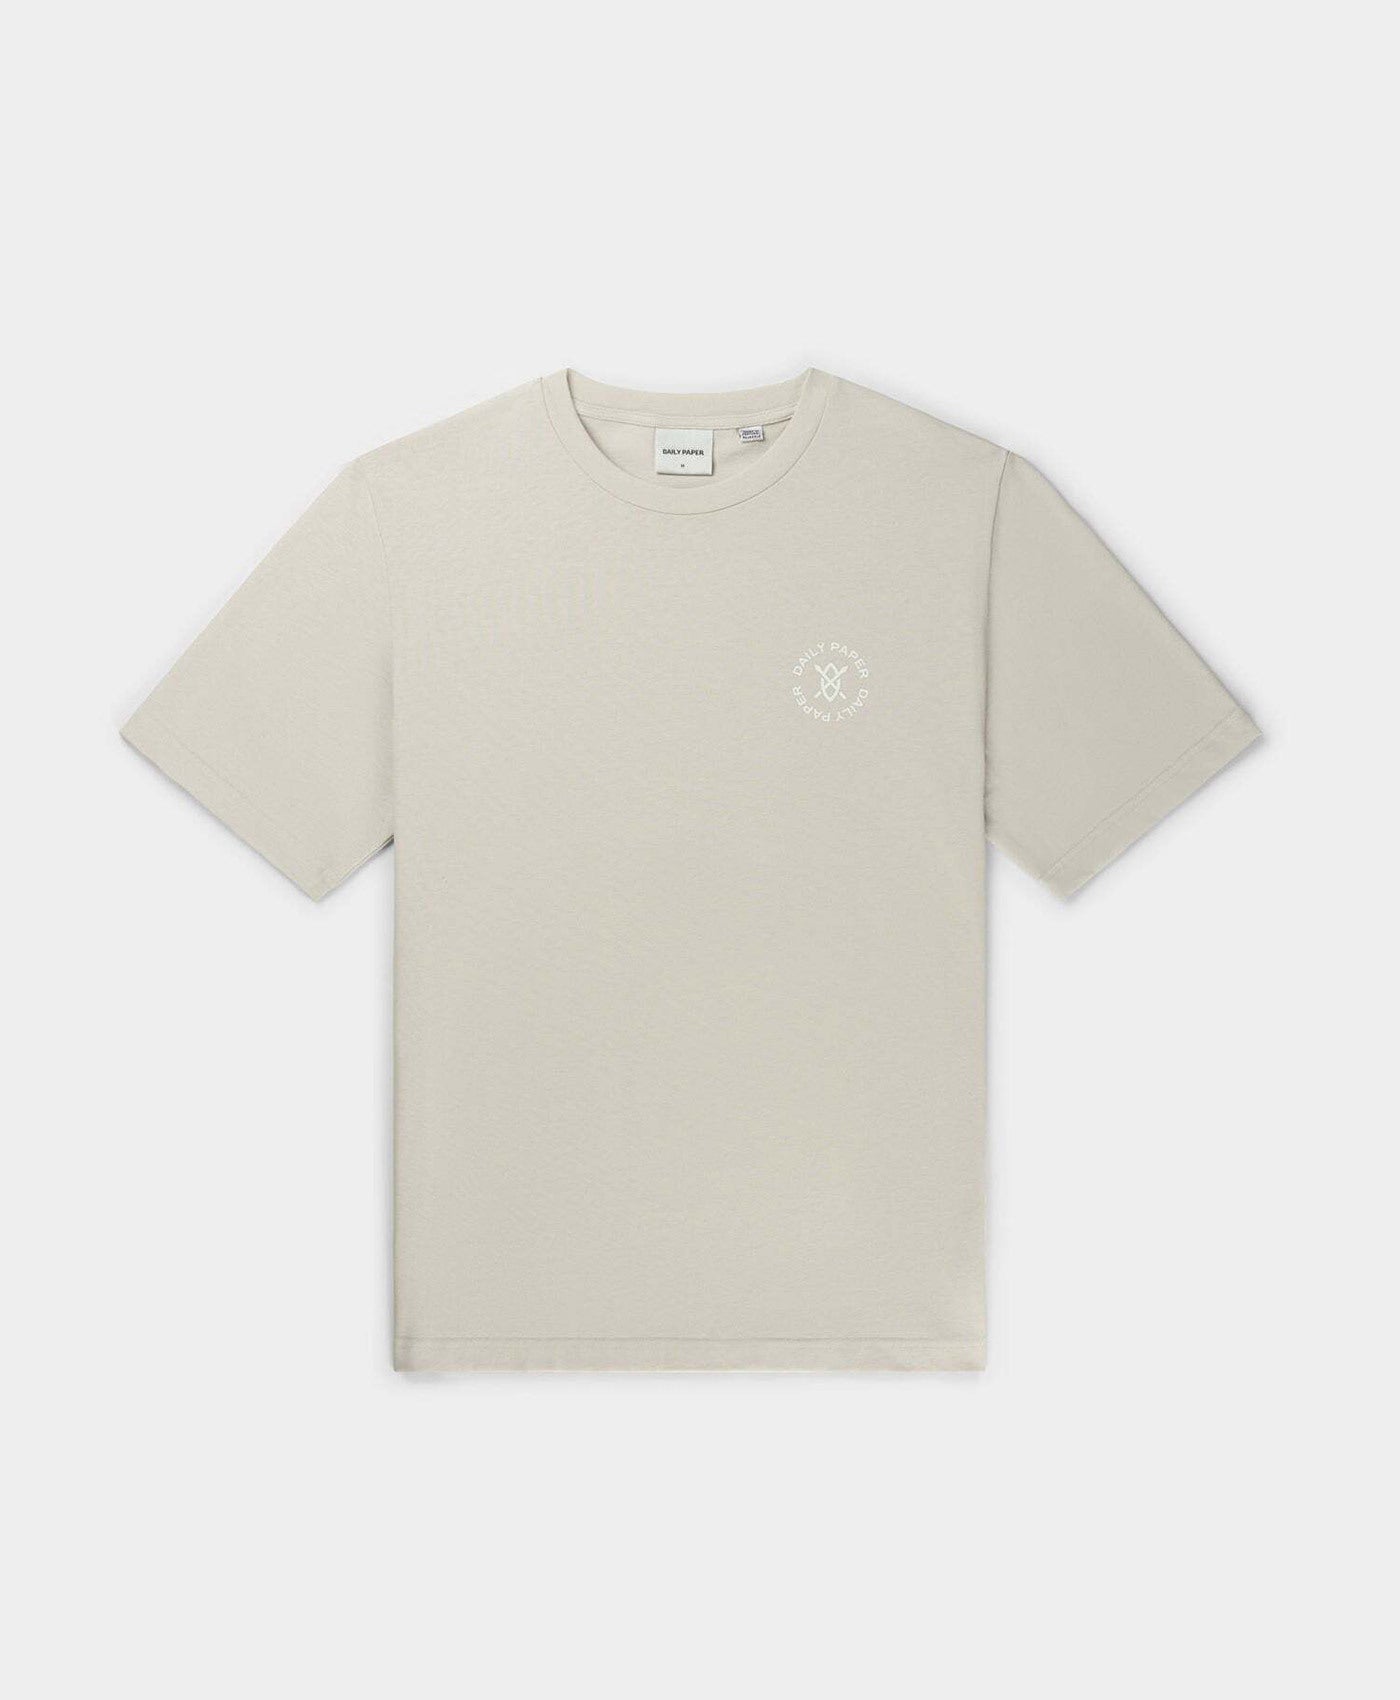 DP - White Sand Circle T-Shirt - Packshot - Front